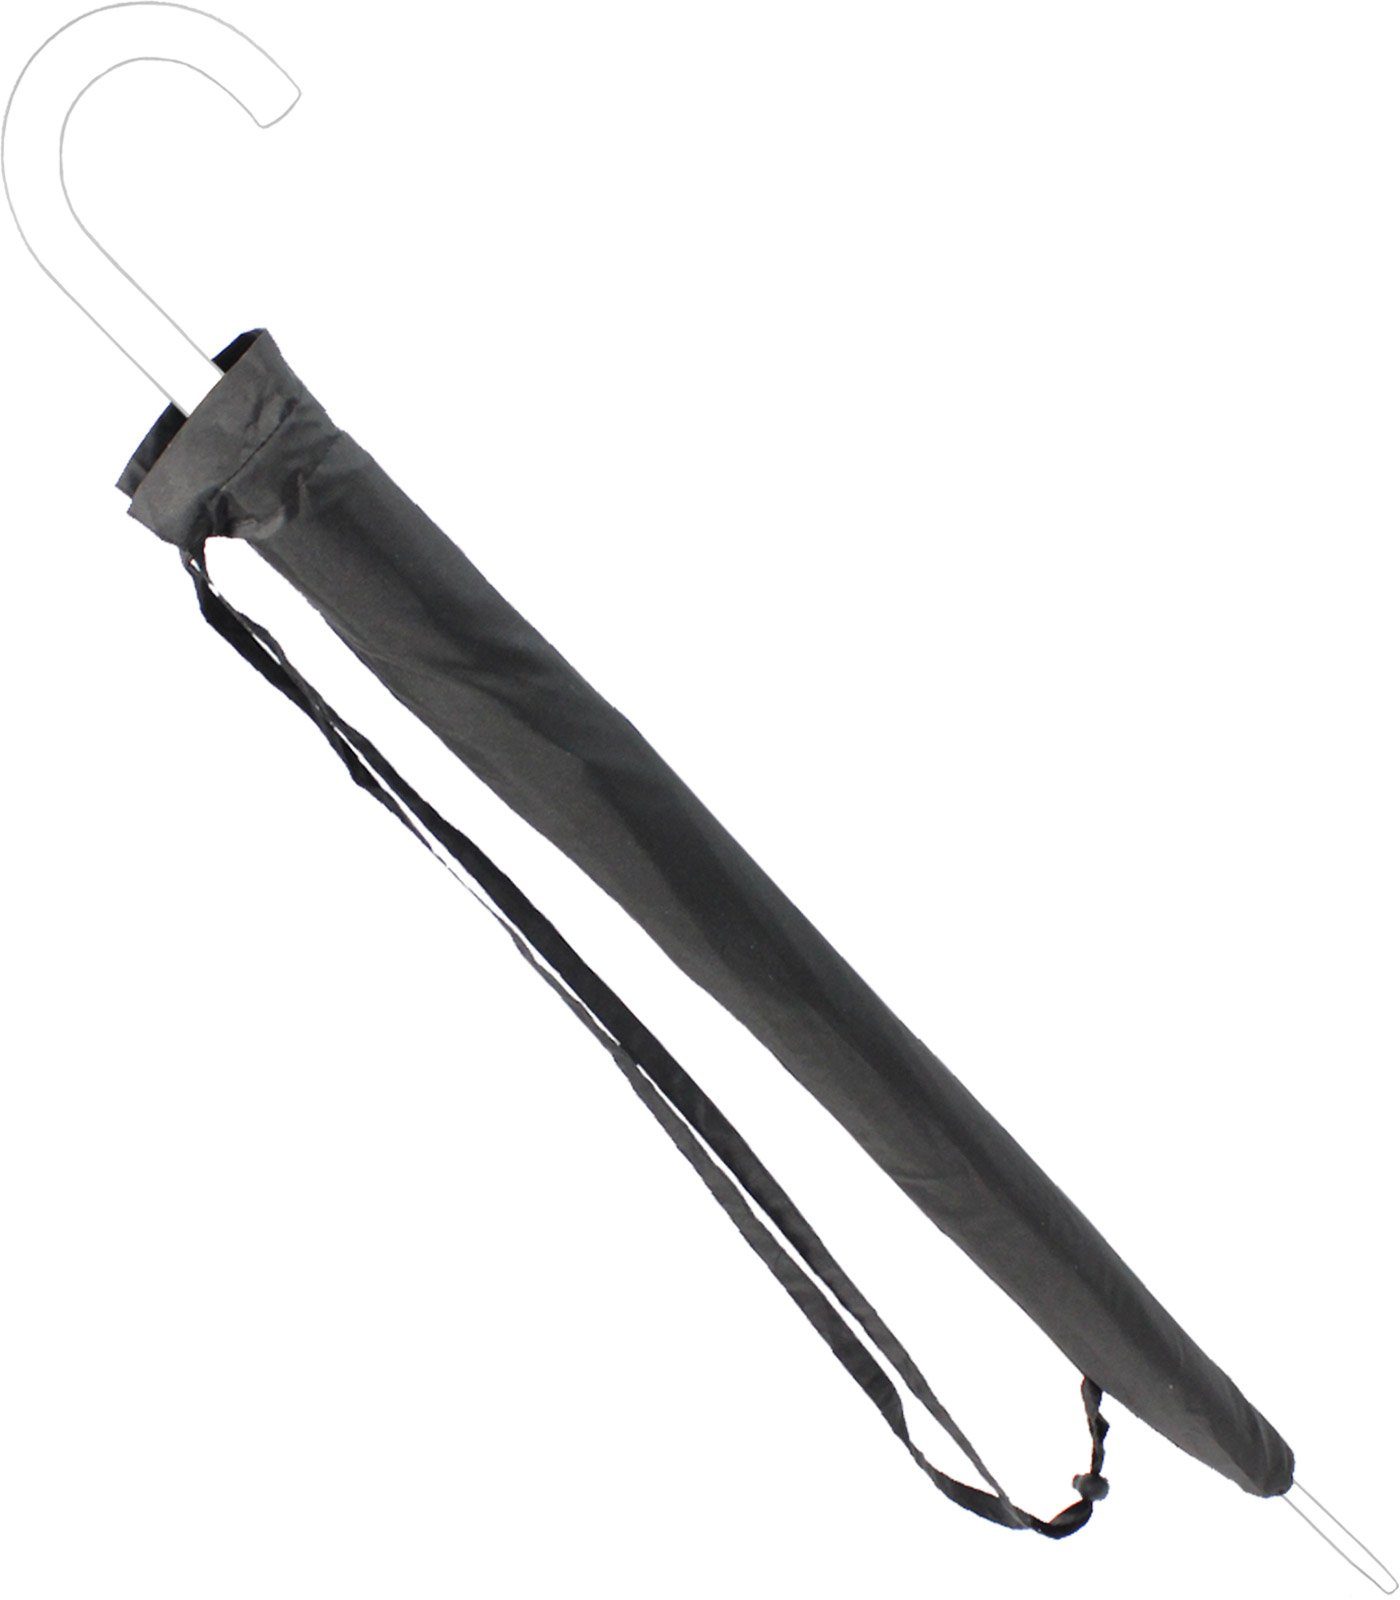 Umhängen, - Schutzhülle umhängbar zum Regenschirm-Hülle iX-brella Langregenschirm schwarz-Gr.XXL